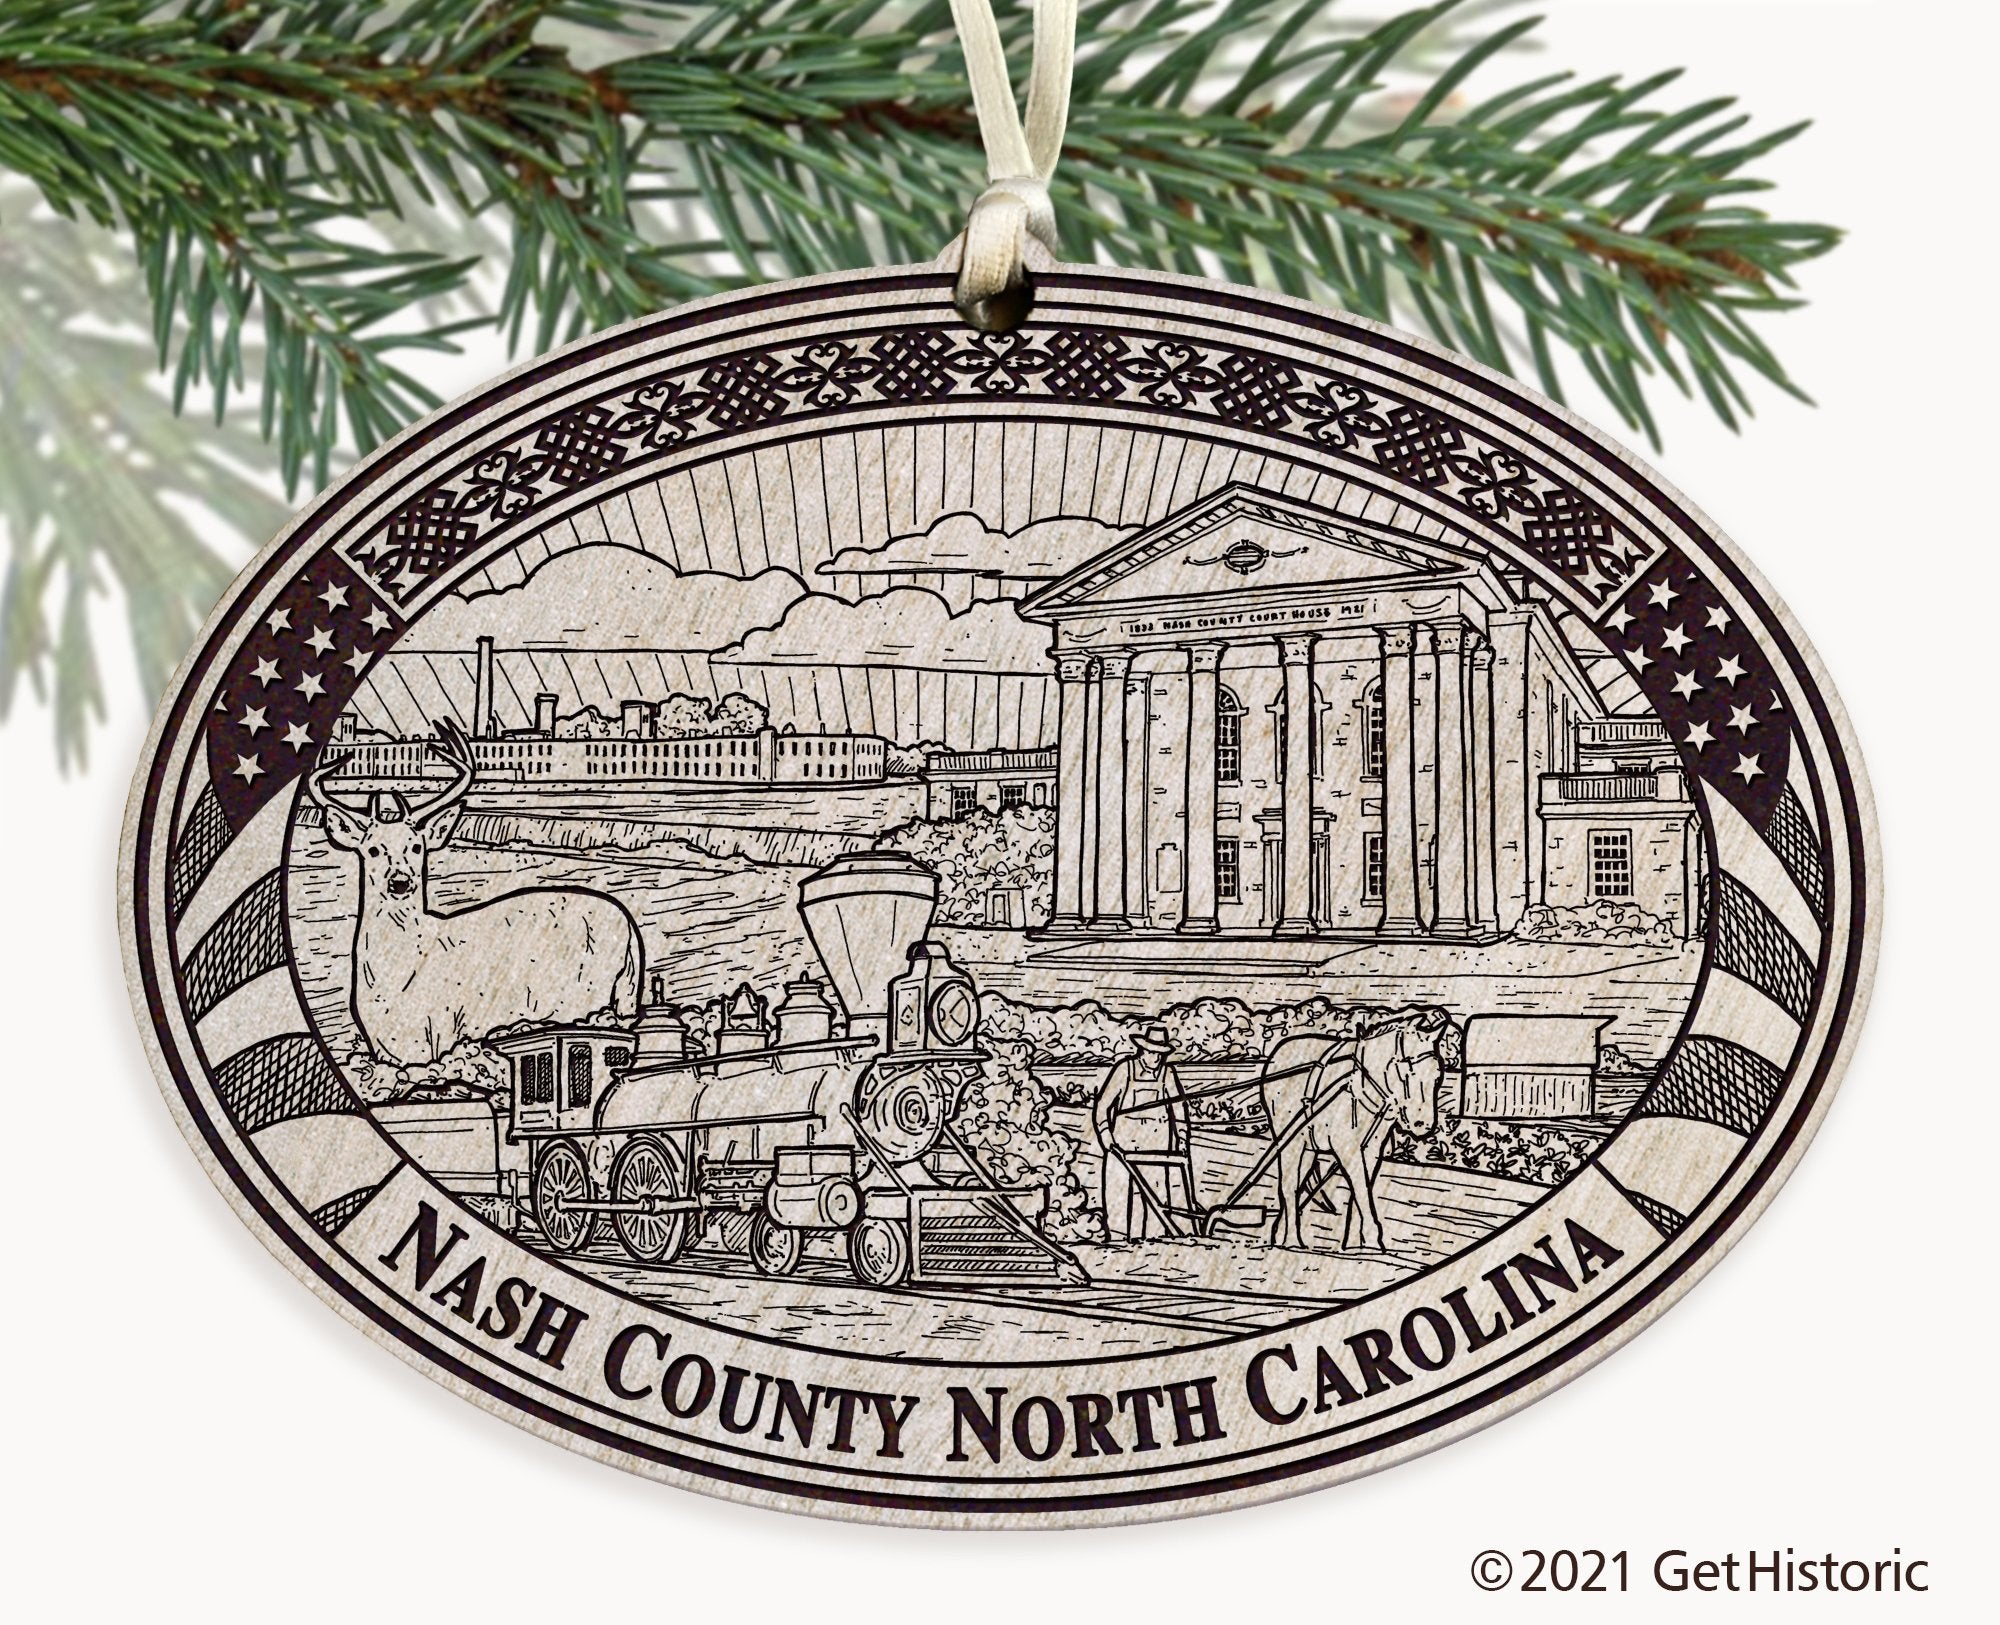 Nash County North Carolina Engraved Ornament